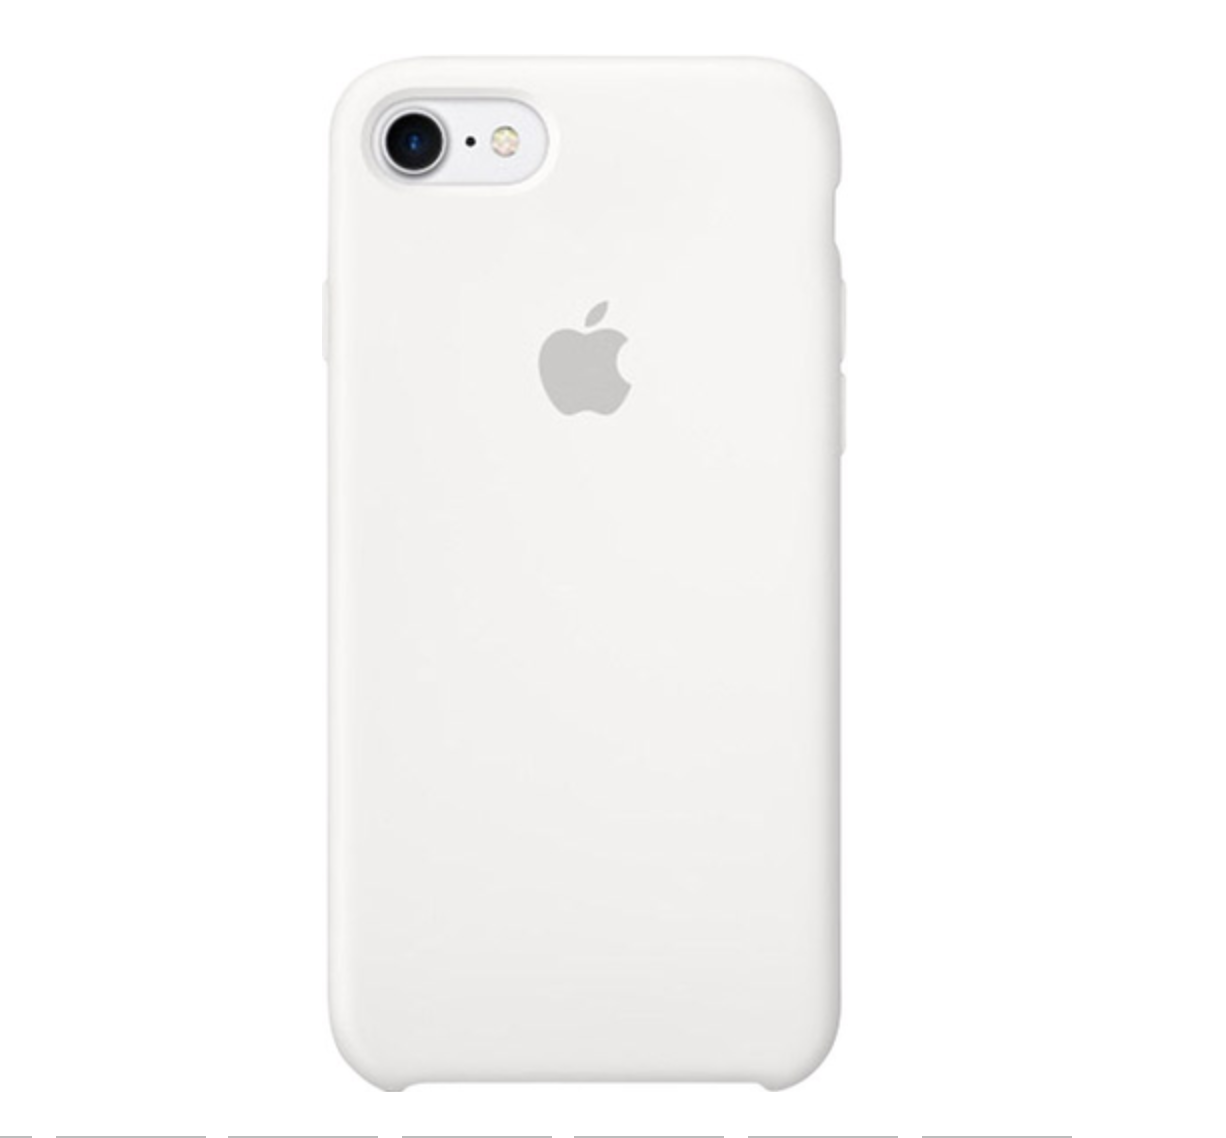 Apple Silikonhülle iPhone 7 / 8 / SE 2020 weiß 